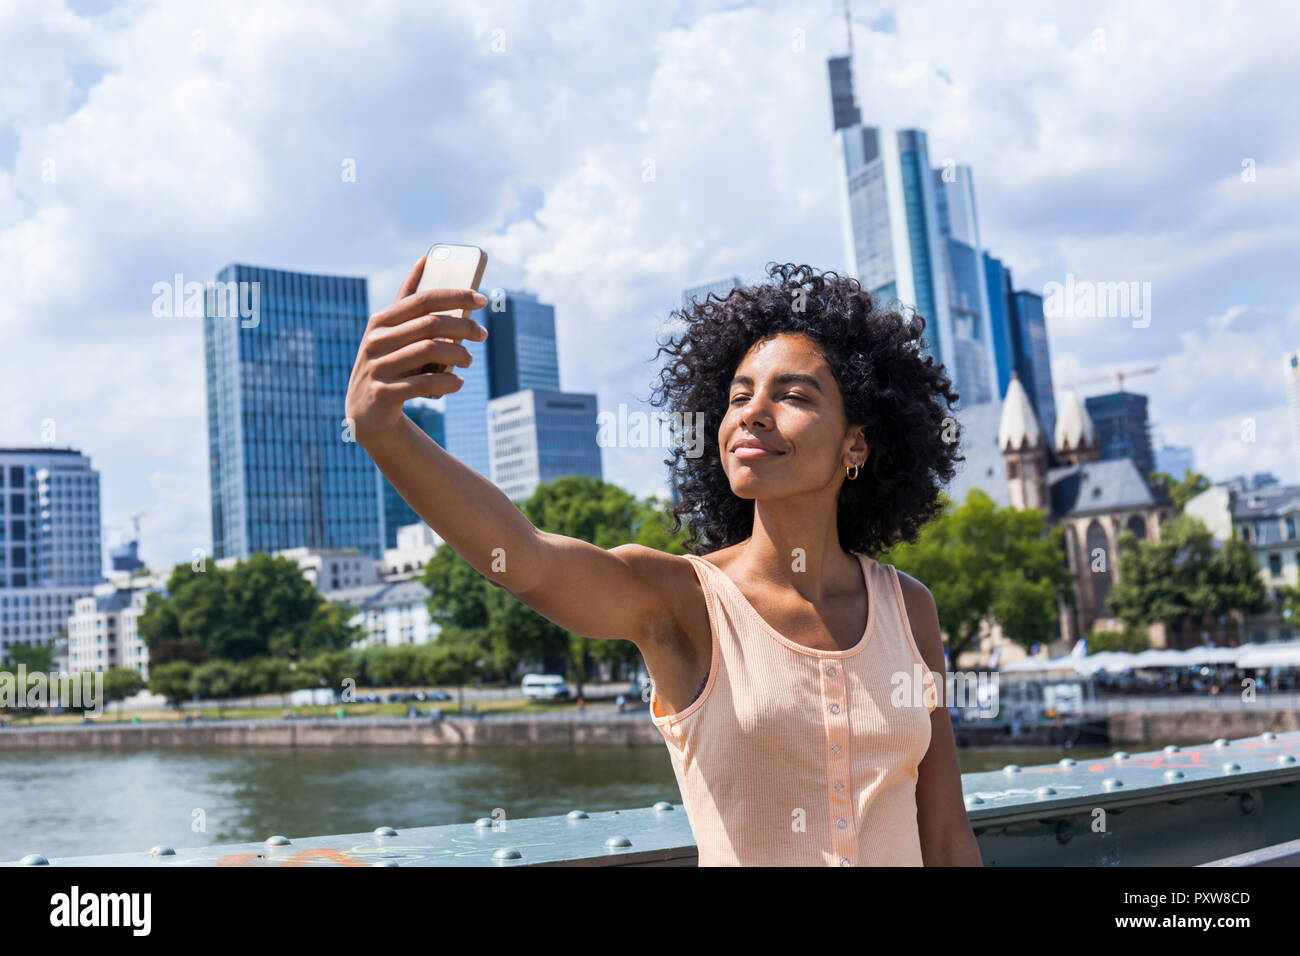 Alemania, Frankfurt, retrato de mujer joven con contenido el cabello rizado teniendo selfie delante de Skyline Foto de stock